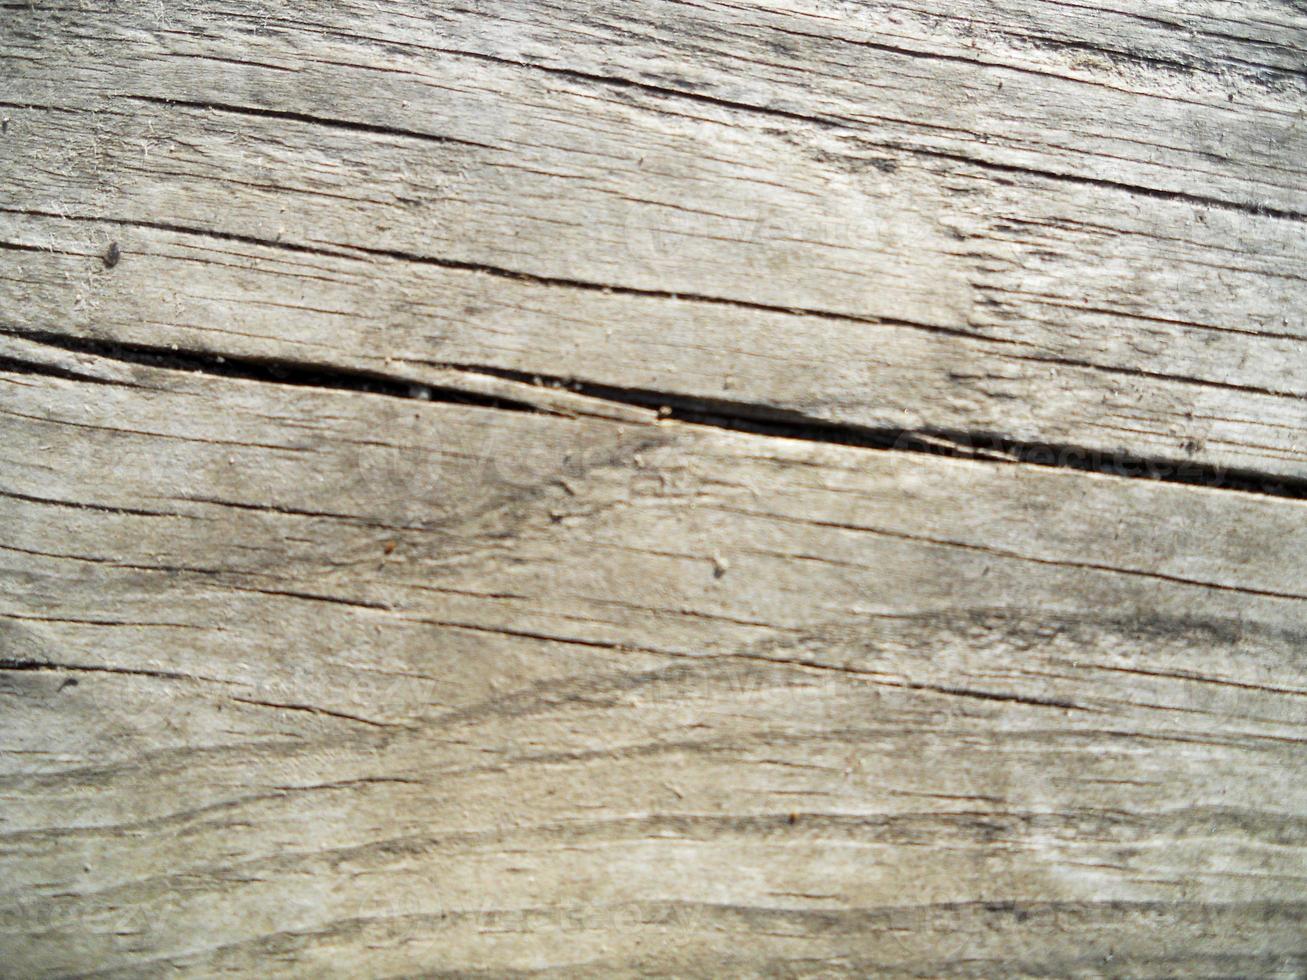 bakgrundsstruktur brunt trä, närbildsfraktur foto